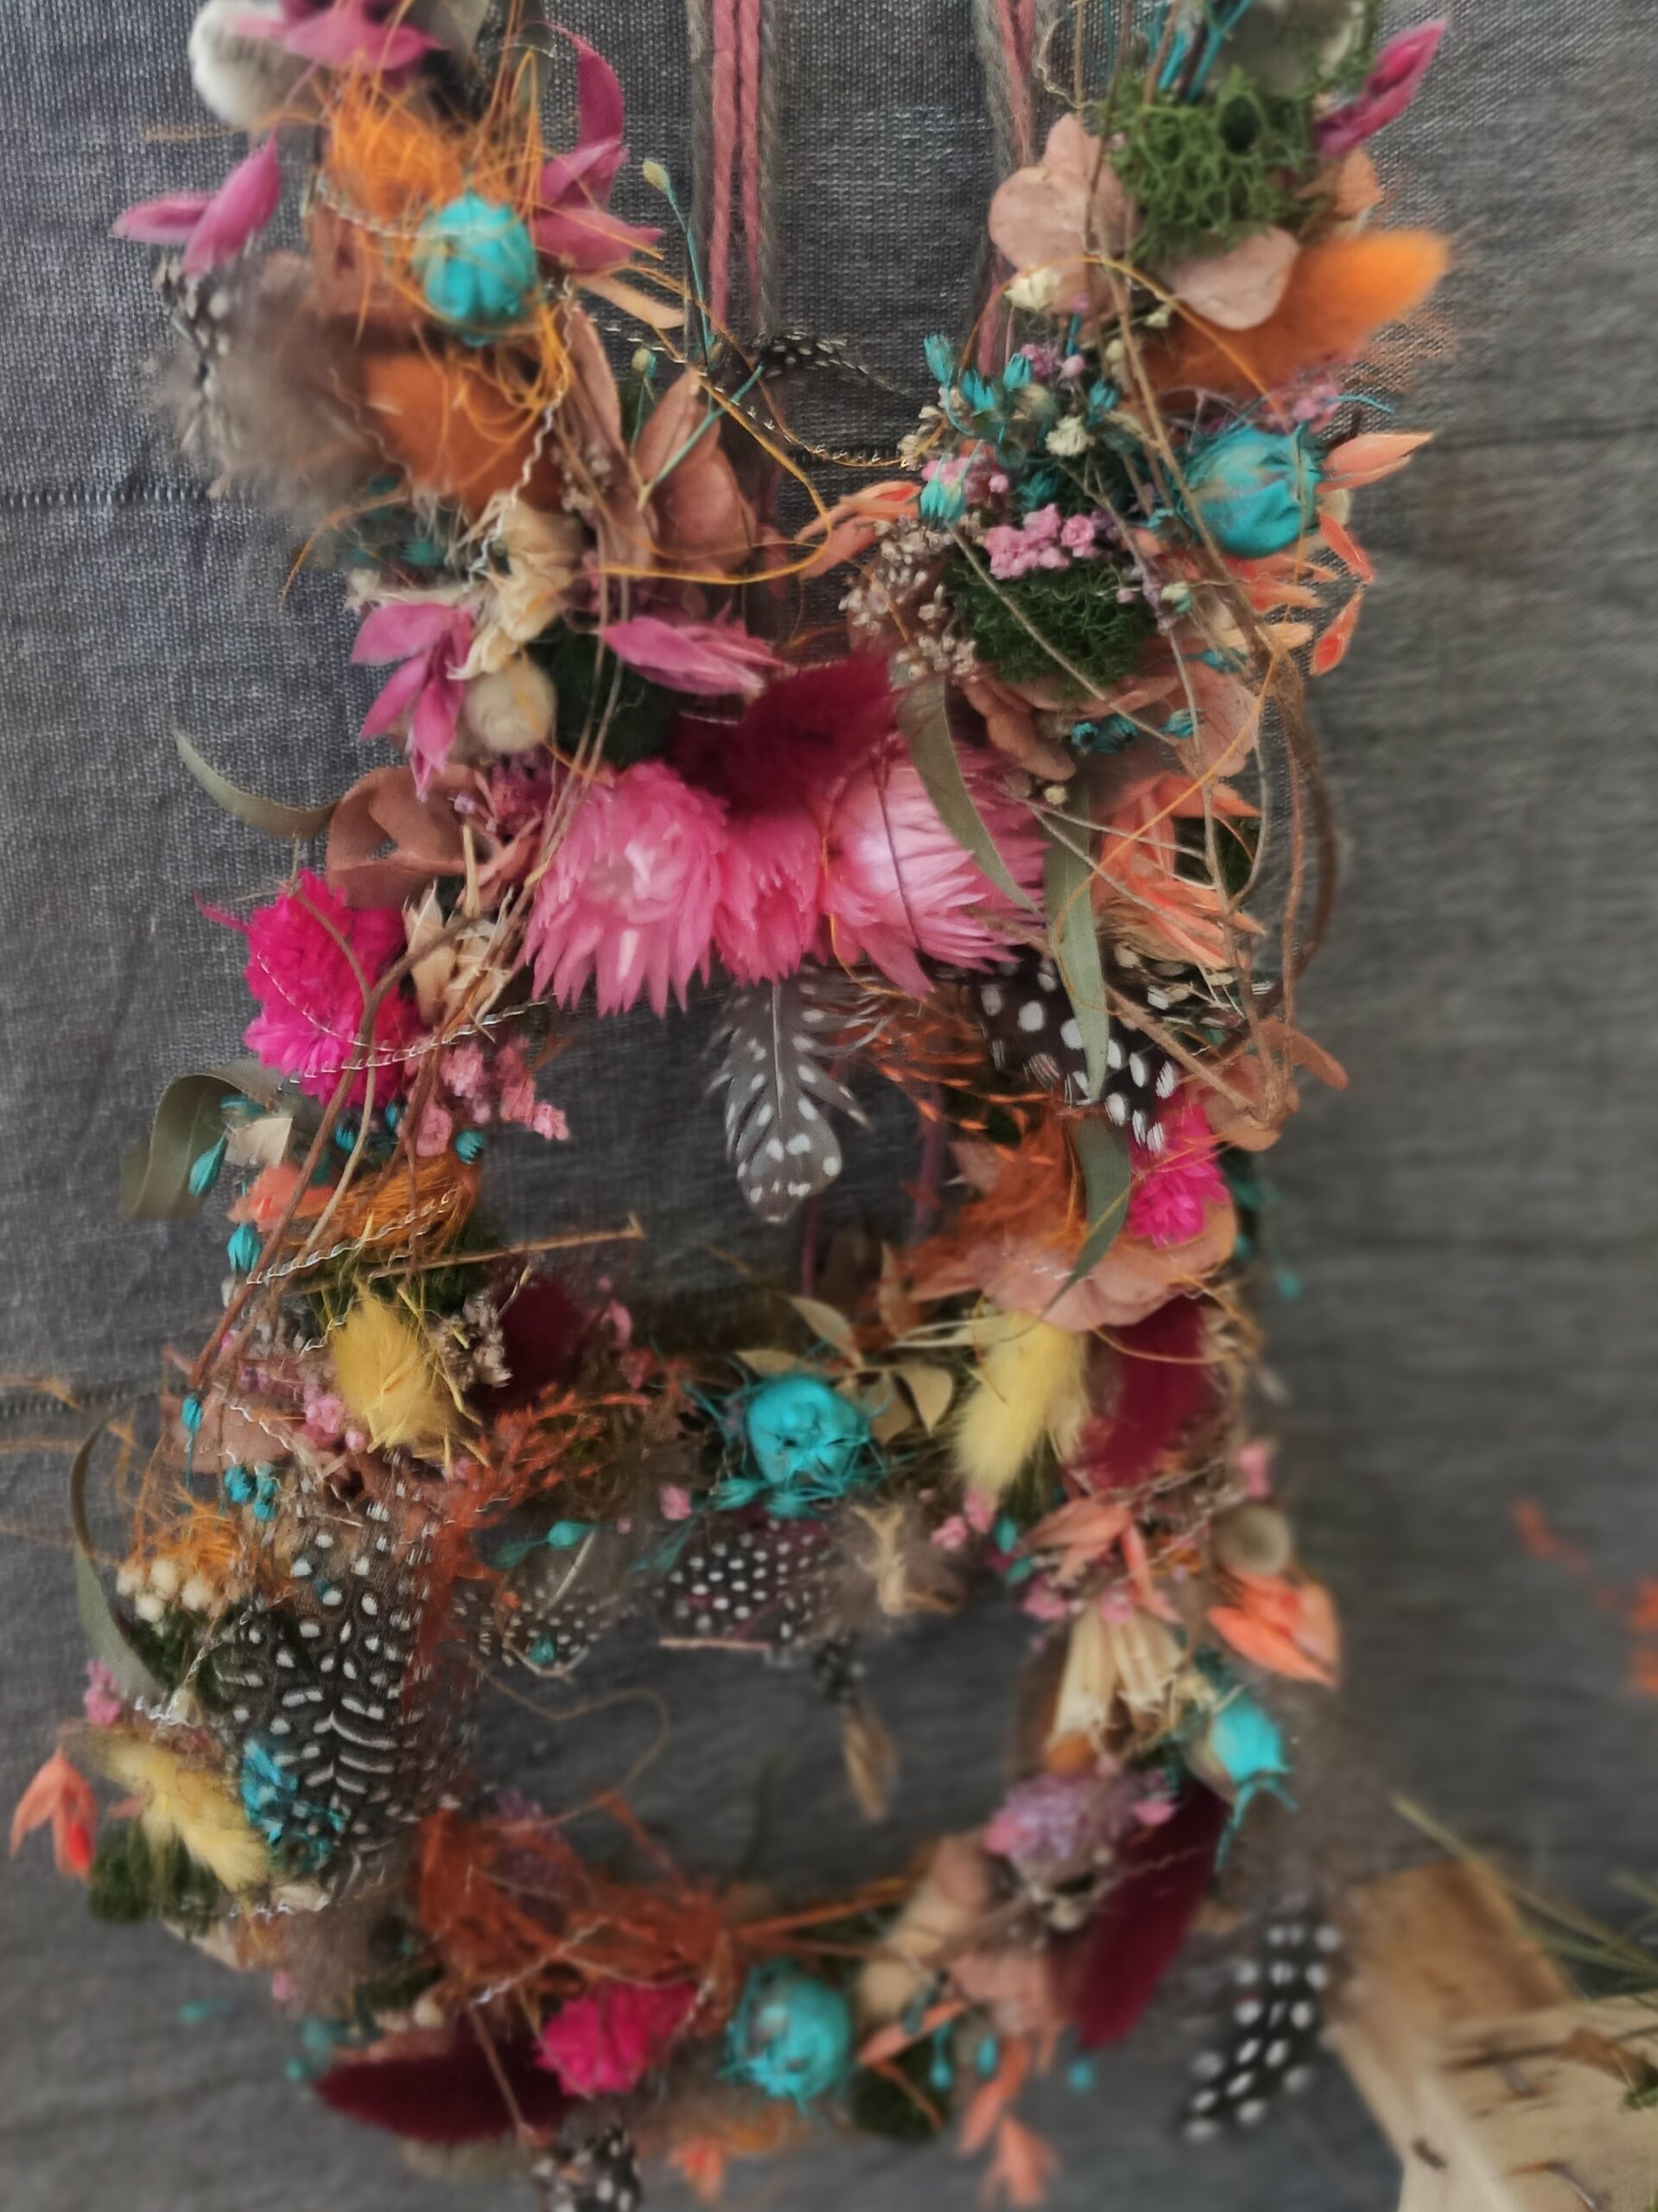 Die Silhouette eines Hasen geschmückt mit bunten Blüten, Federn und anderen Naturmaterialien.